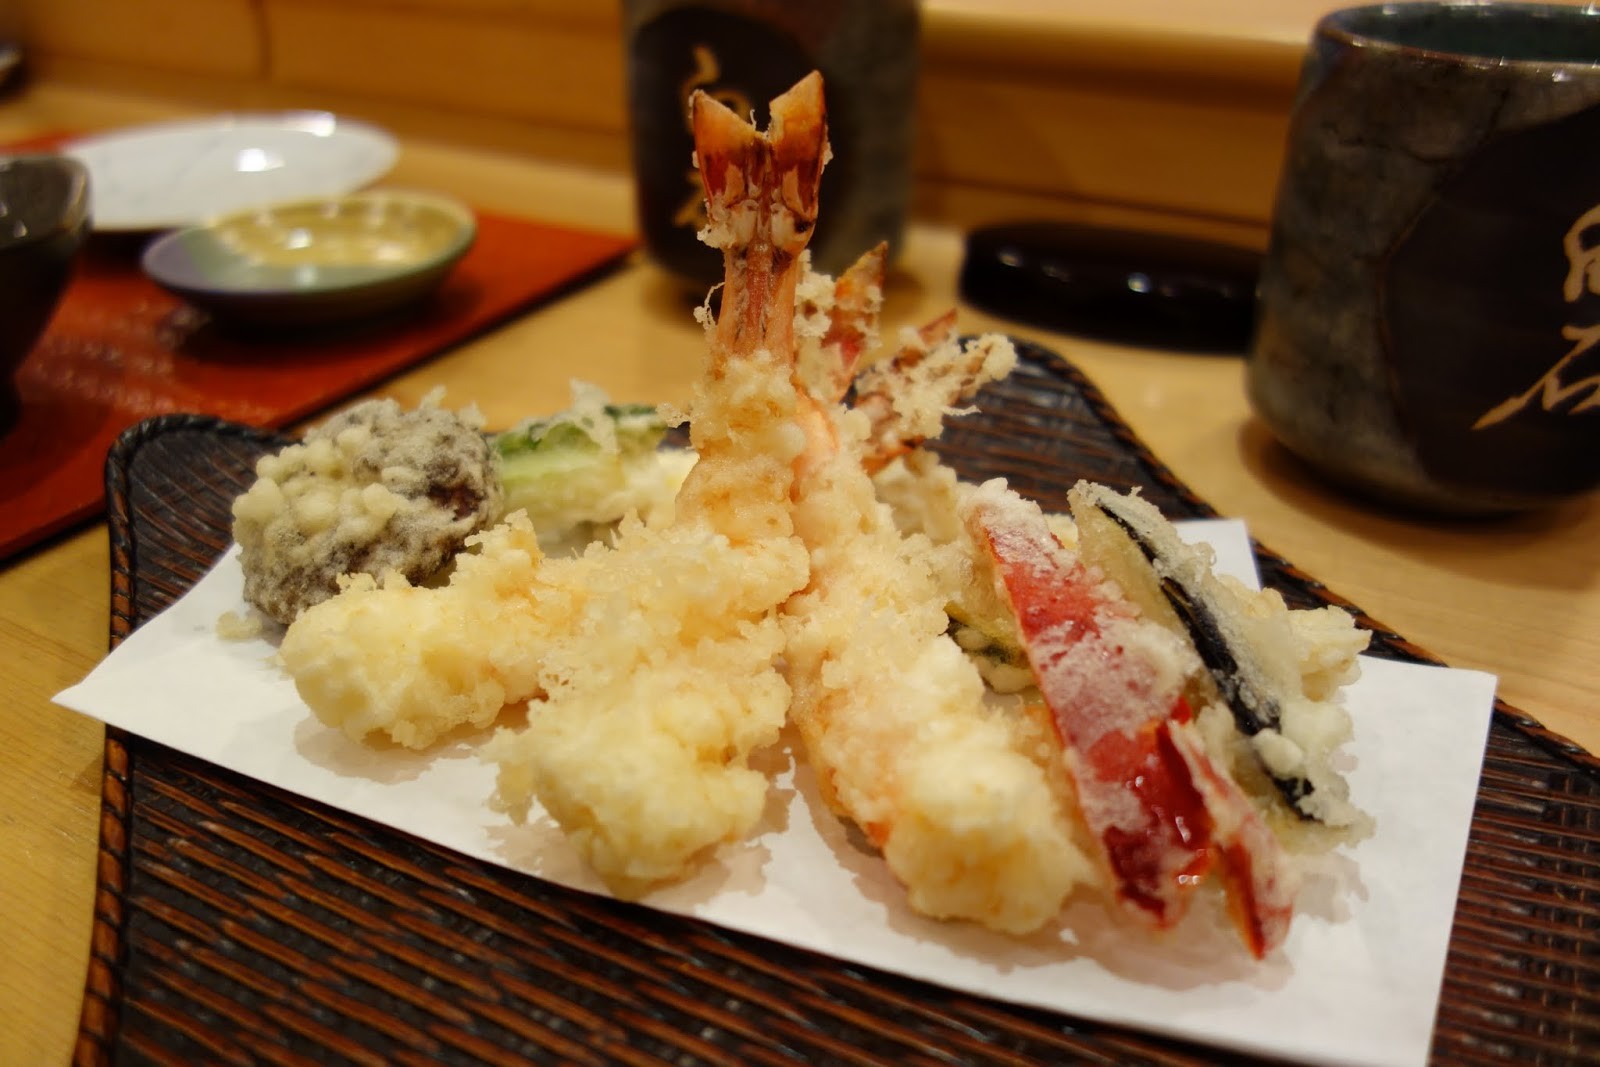 シンガポールの白石（Shiraishi）は本格江戸前寿司が頂ける日本料理屋！